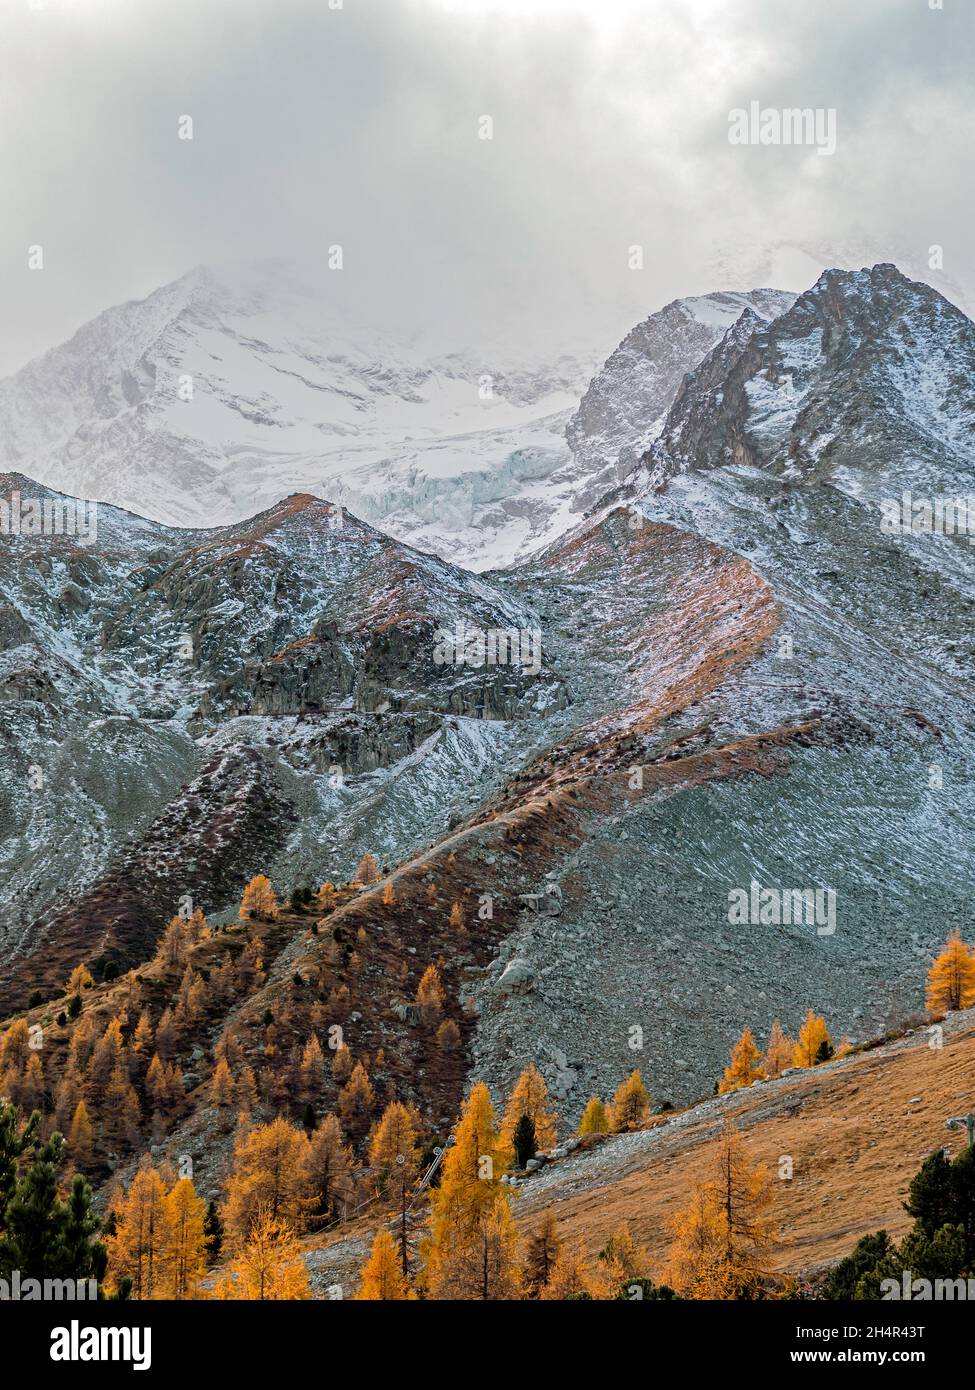 Vistas increíbles sobre un alto valle alpino y montañas cubiertas de nieve. Los árboles de otoño y otoño de color naranja y amarillo bordean los lados del valle Foto de stock